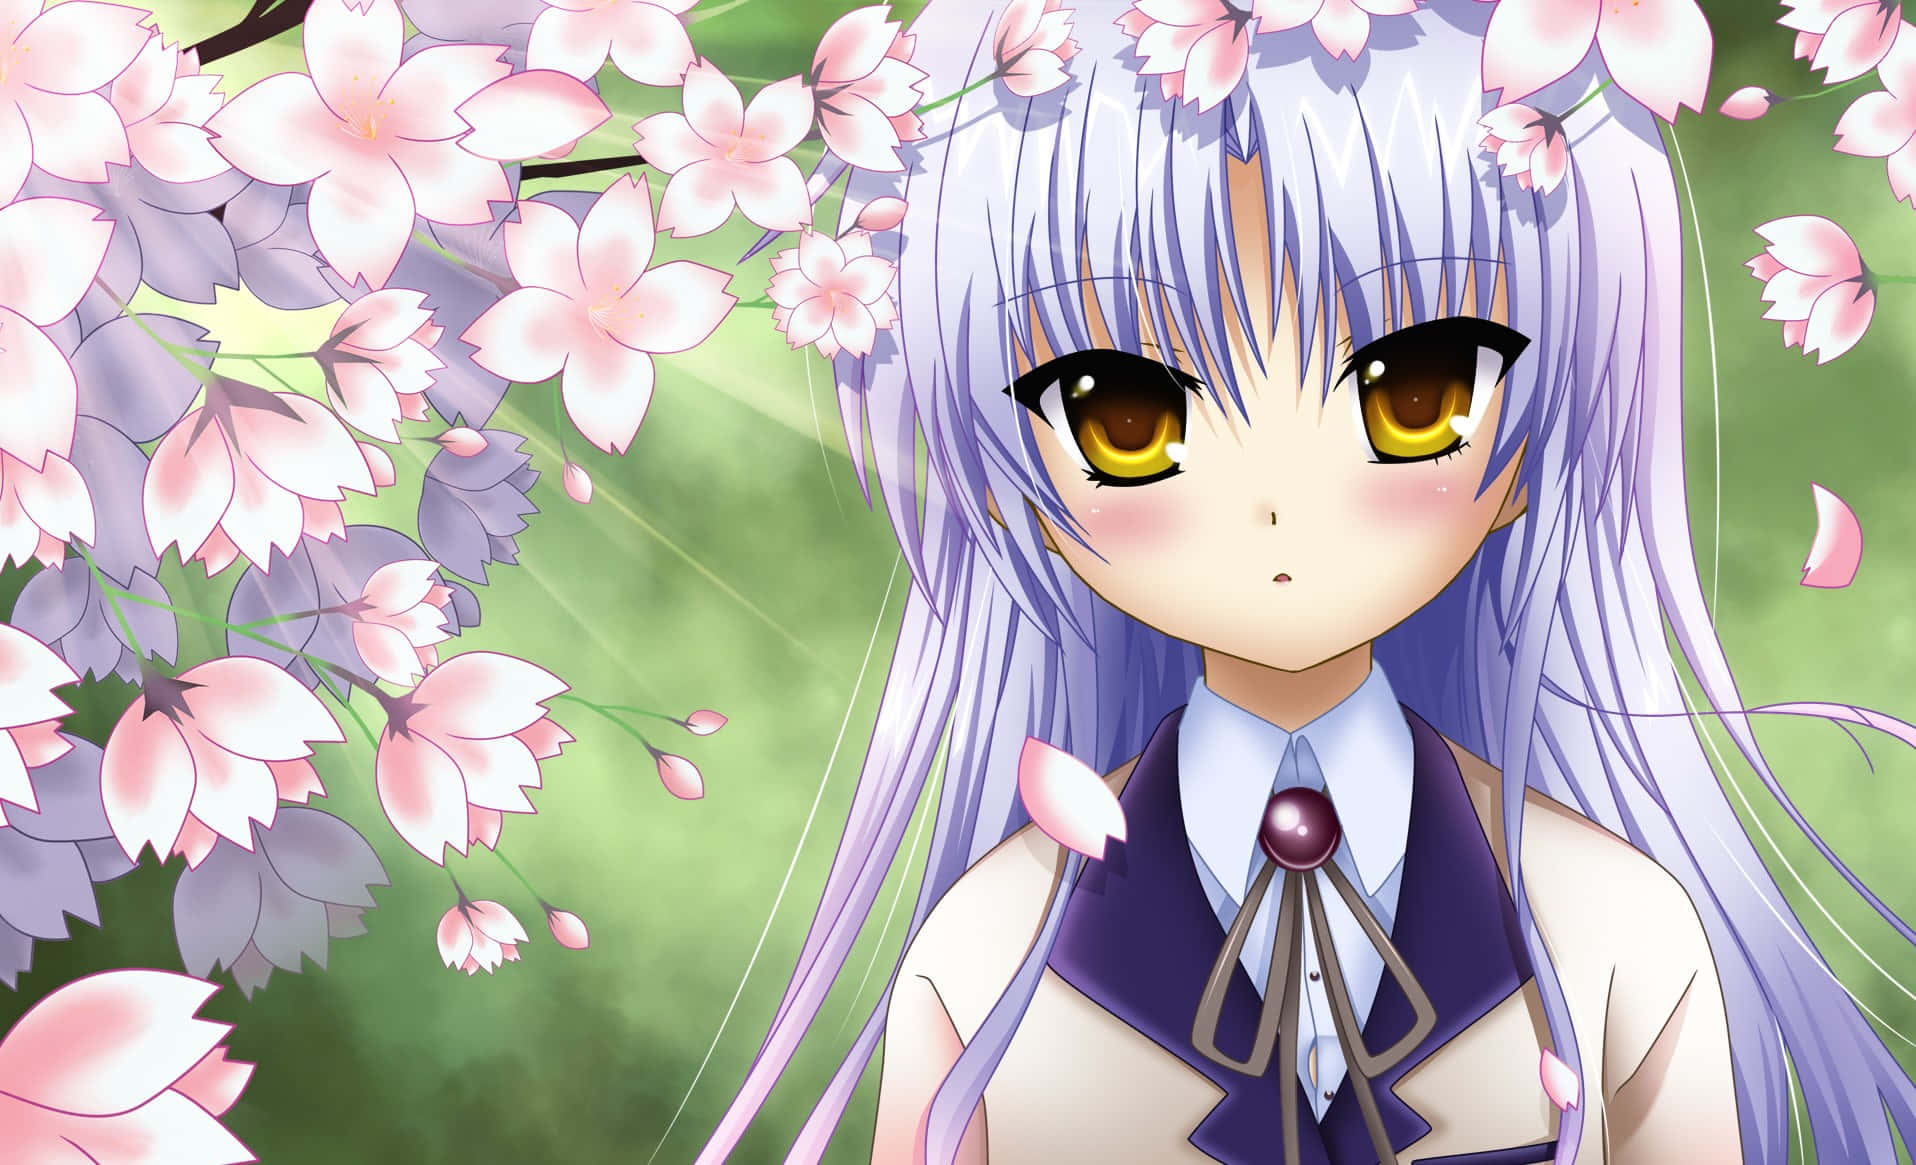 Blushing Anime Girl With Purple Hair